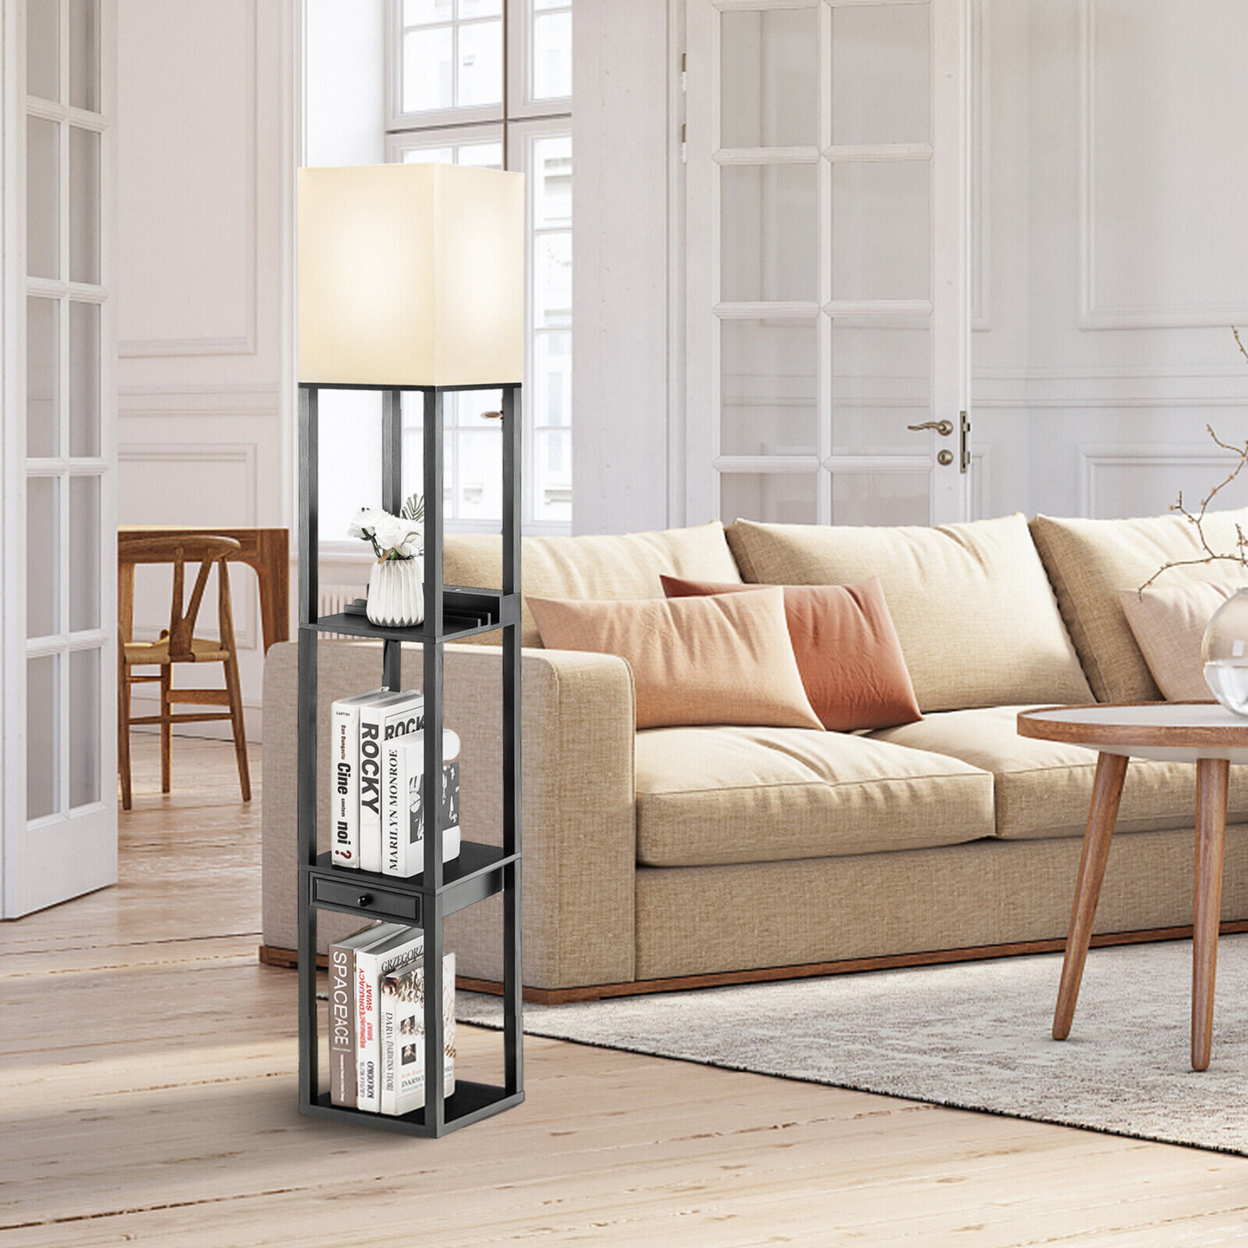 Modern Floor Lamp W/ Shelves And Drawer,Shelf Floor Lamp W/ Adjustable Brightness